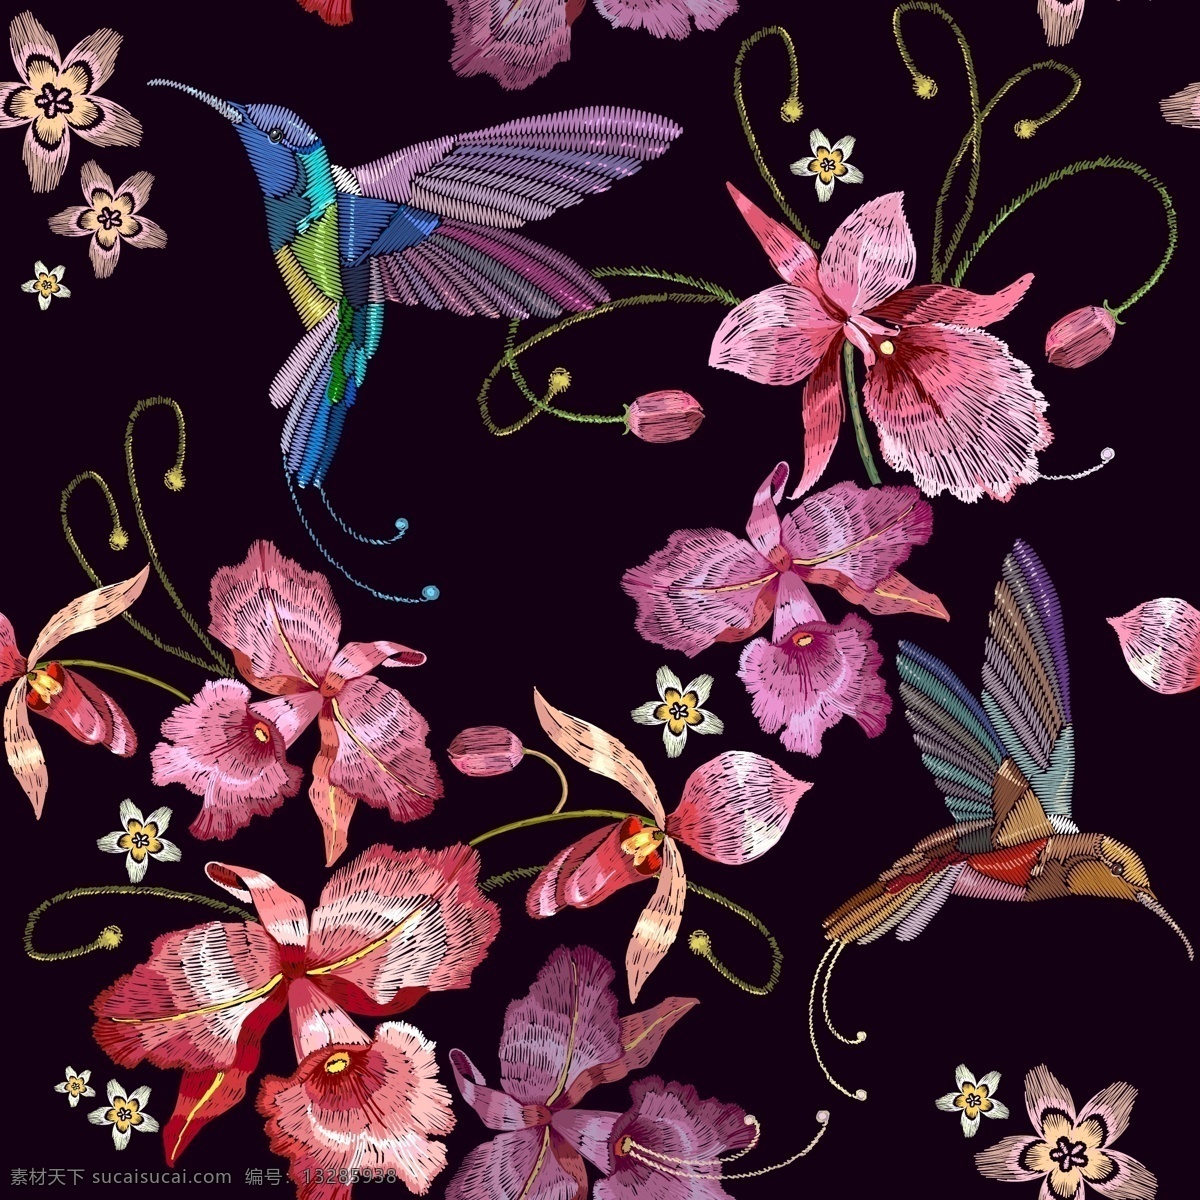 中国 传统 艺术 花朵 背景 刺绣 小鸟 底纹